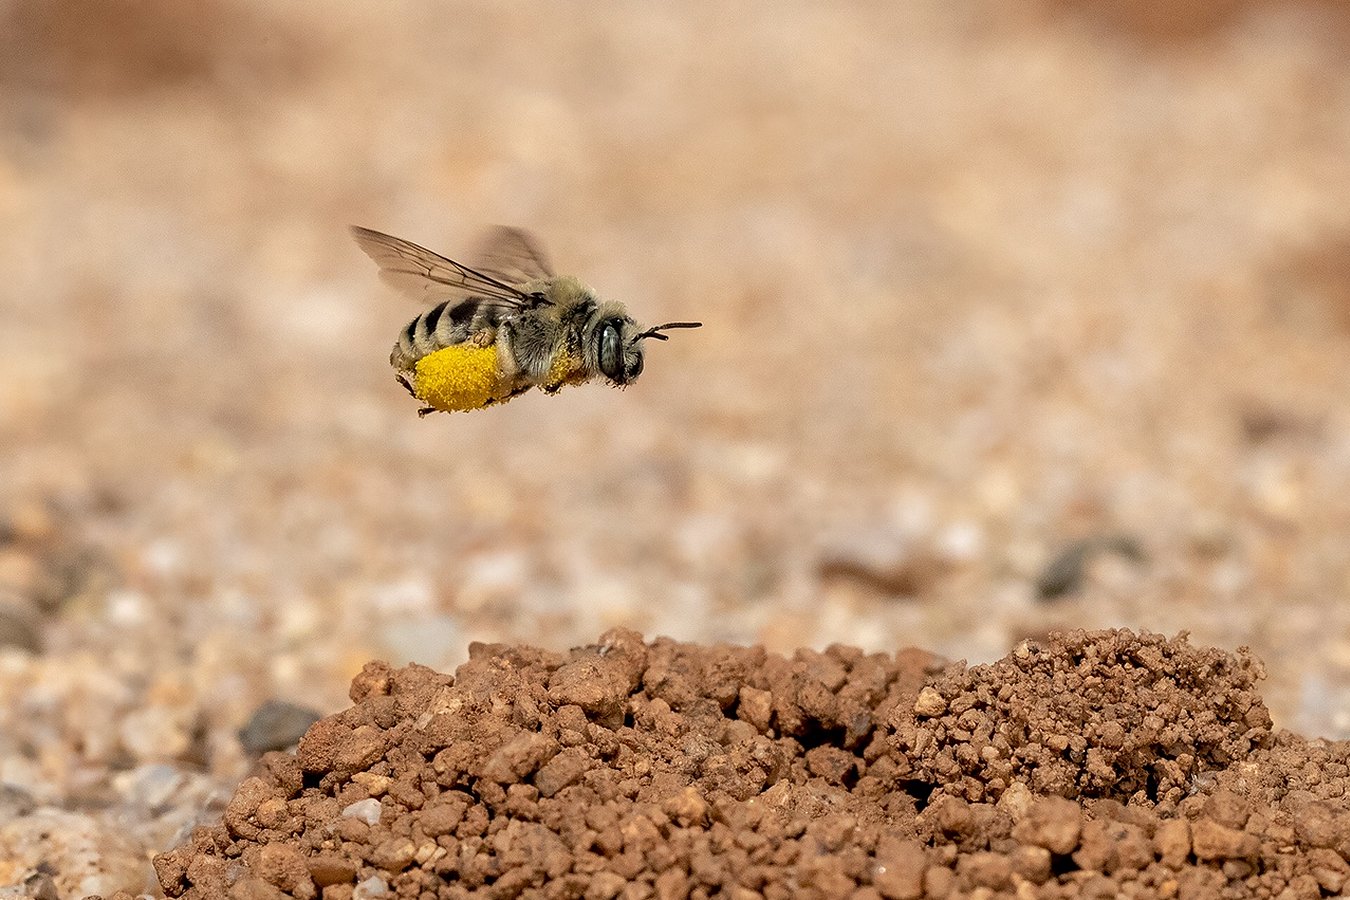 Diadasia rinconis (Apidae) Chimney Bee in Arizona | photo by Bruce Taubert